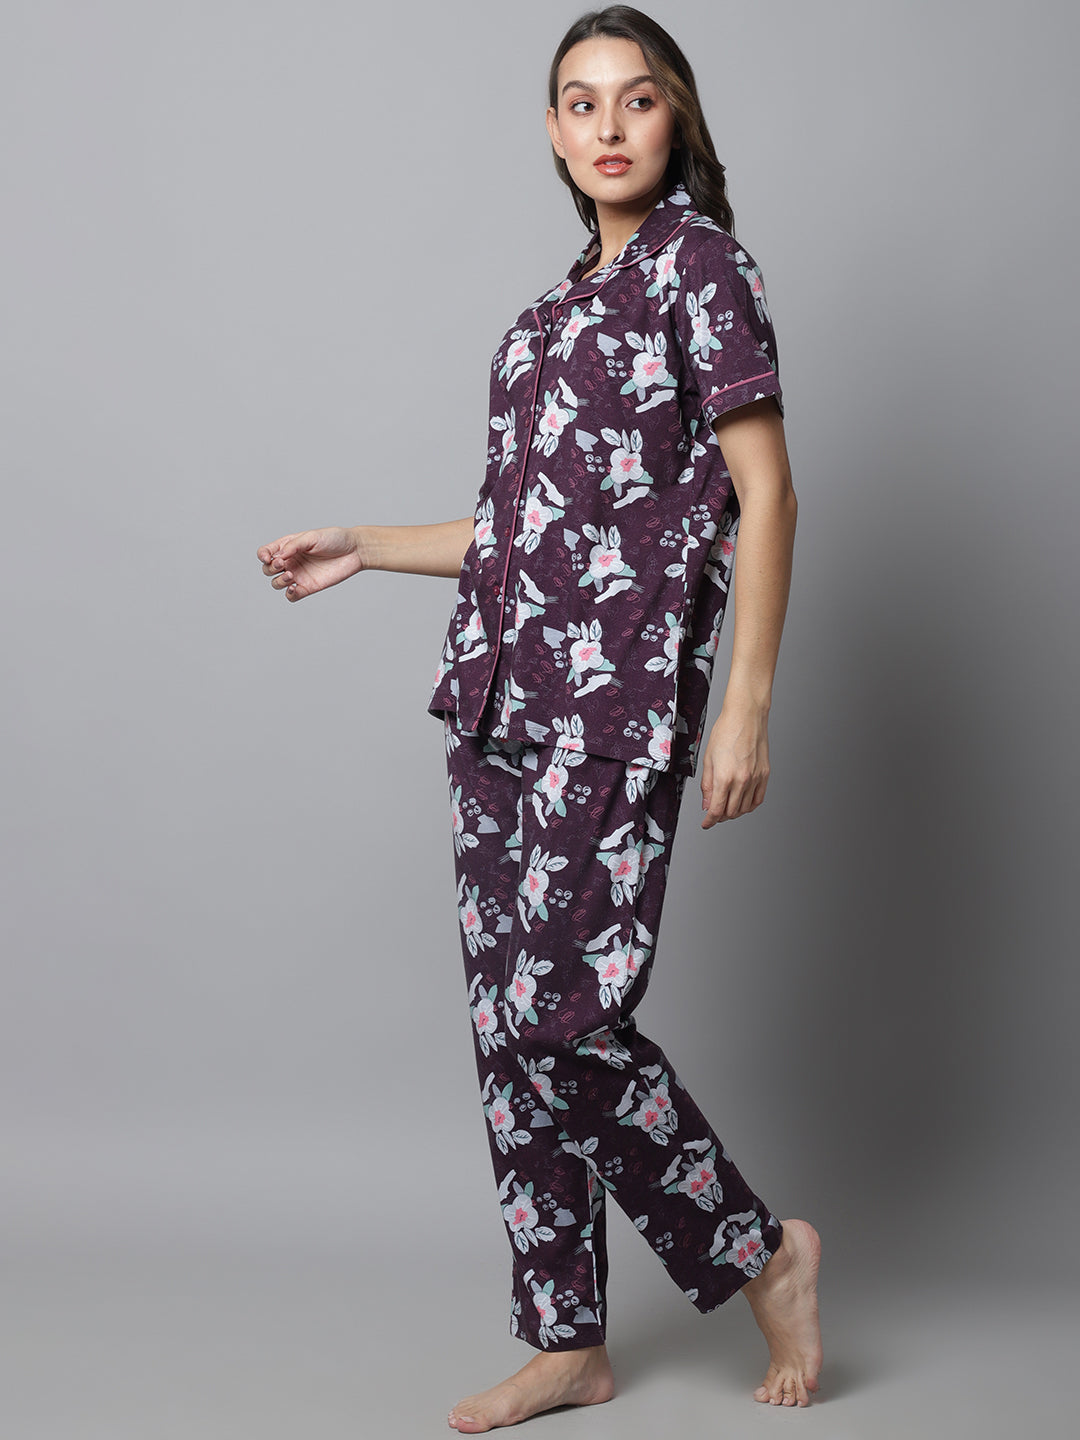 Pyjama Sets_MJKSS23165B